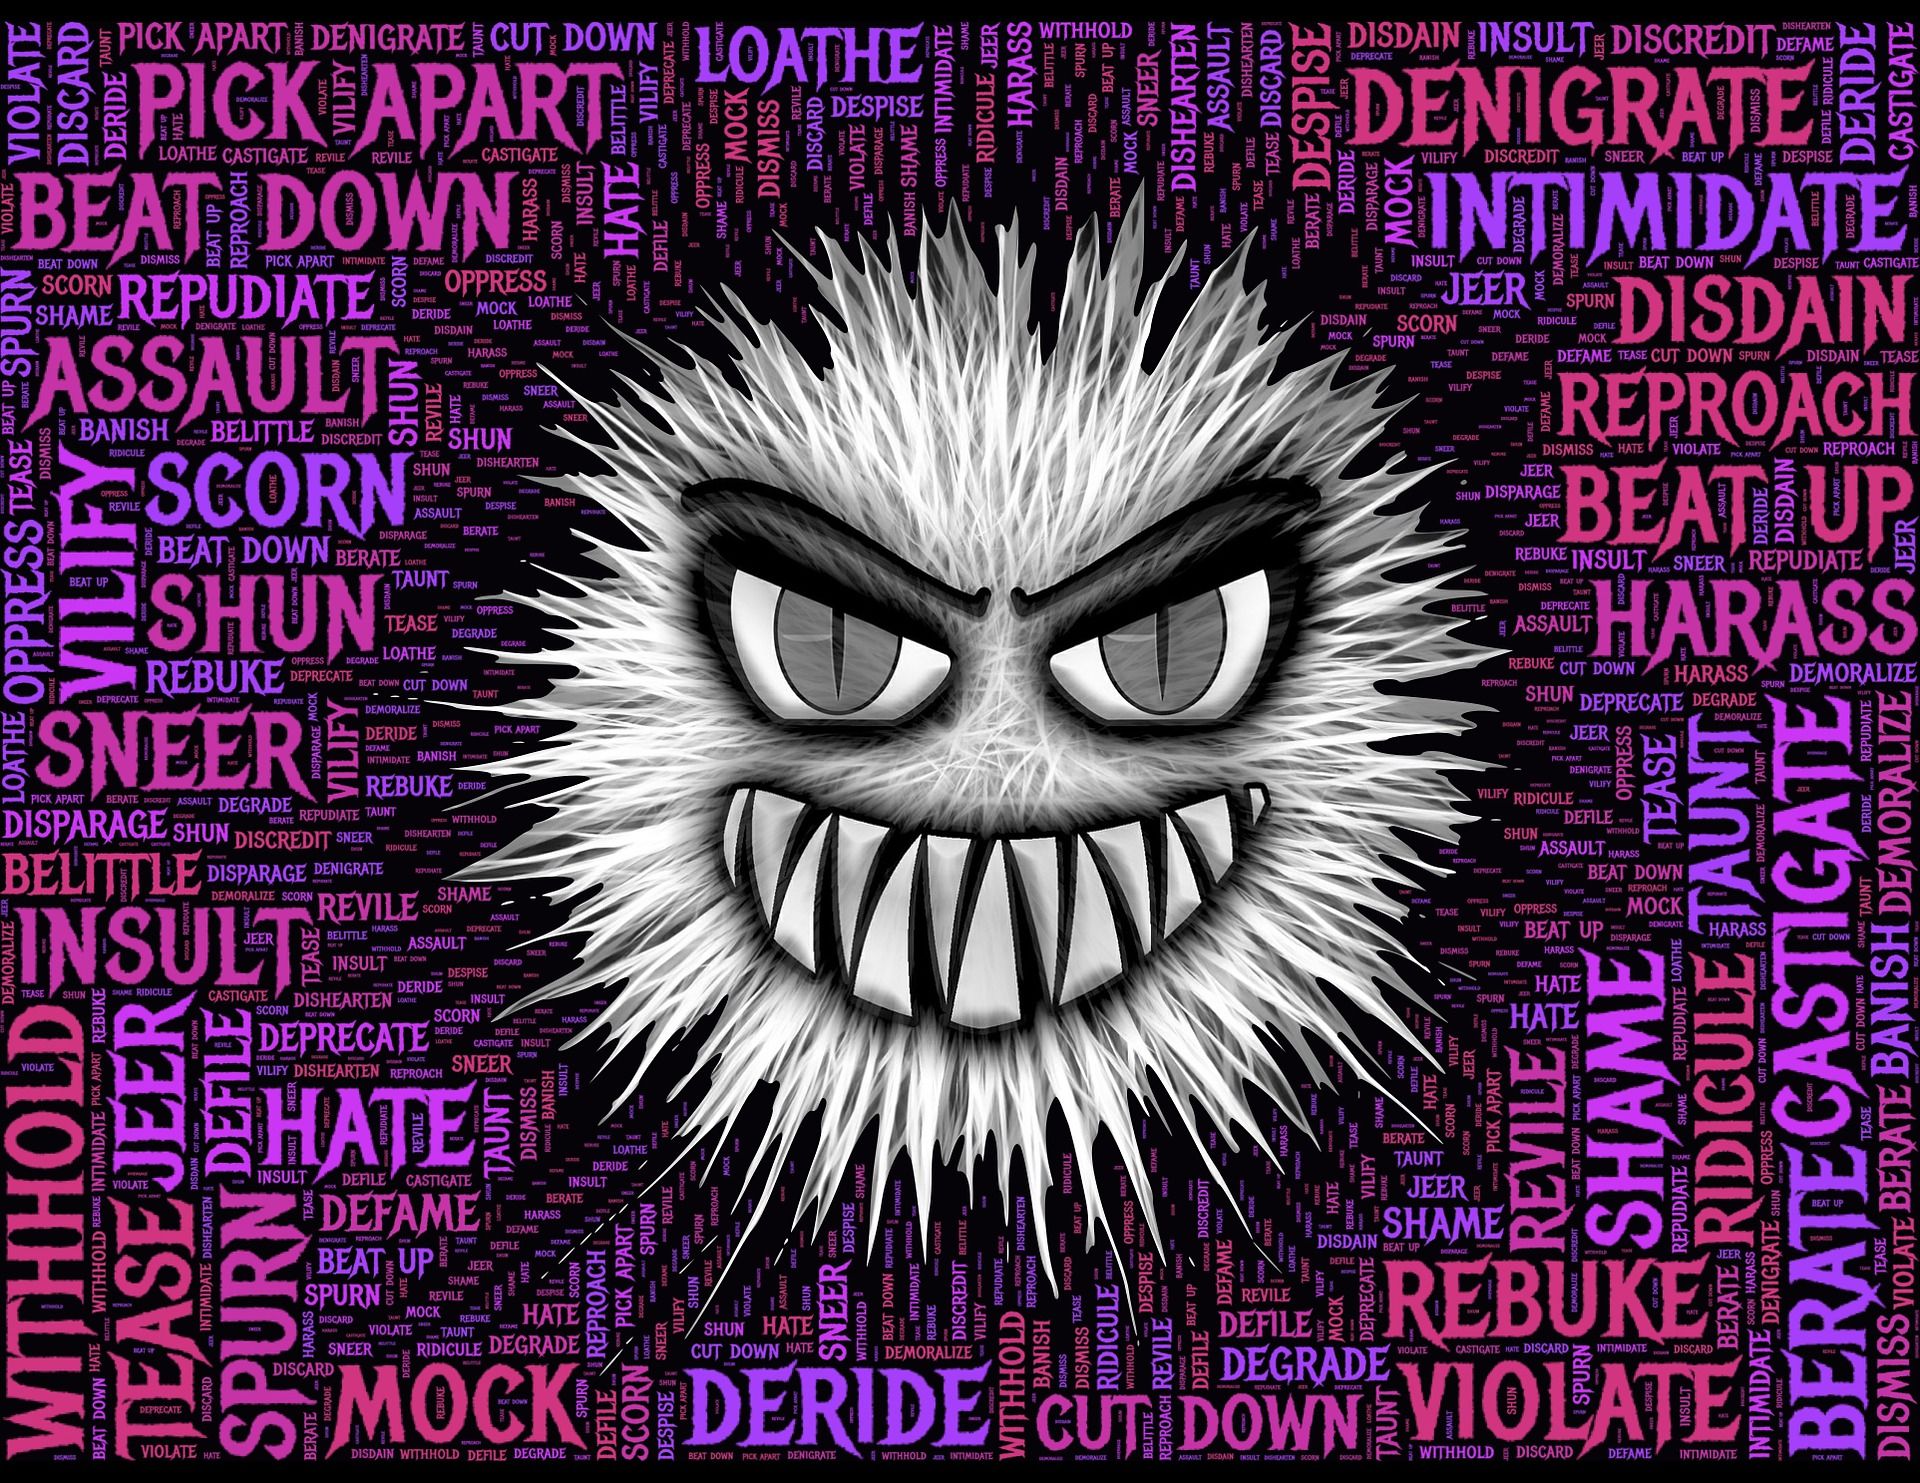 l'agression personnifiée sous forme d'un méchant virus - Image par John Hain de https://pixabay.com/fr/illustrations/agression-haine-m%C3%A9chancet%C3%A9-violent-656795/